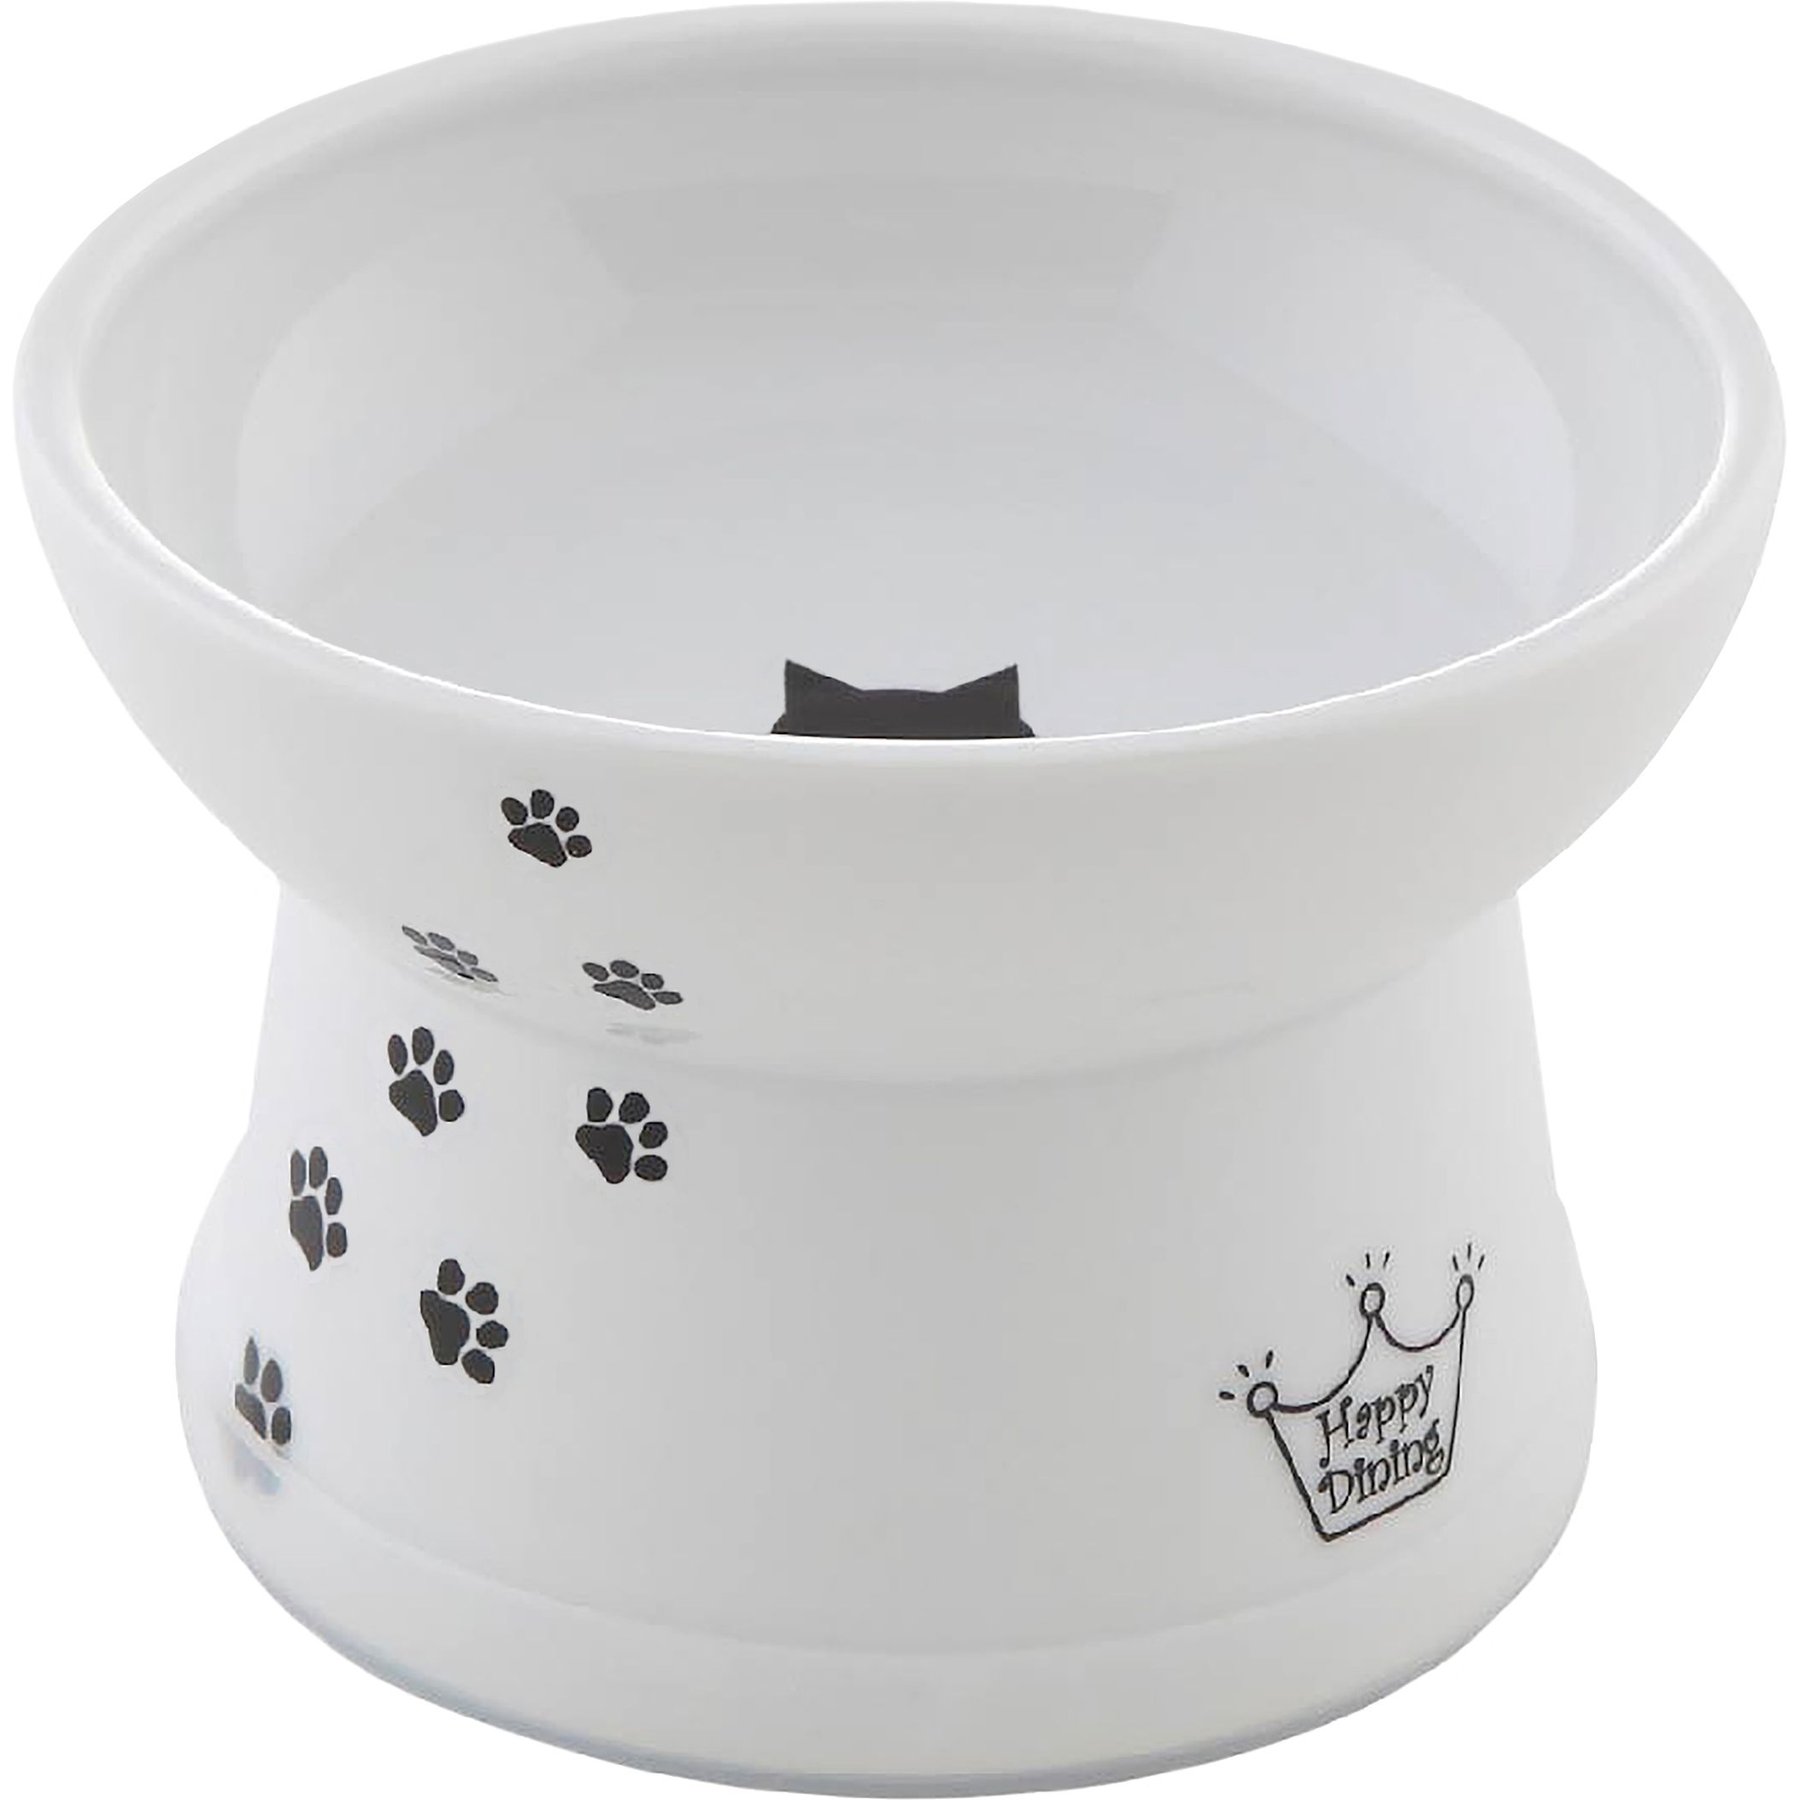 HARIO magnetic bowl for shorthair cat - Shop necoichi Pet Bowls